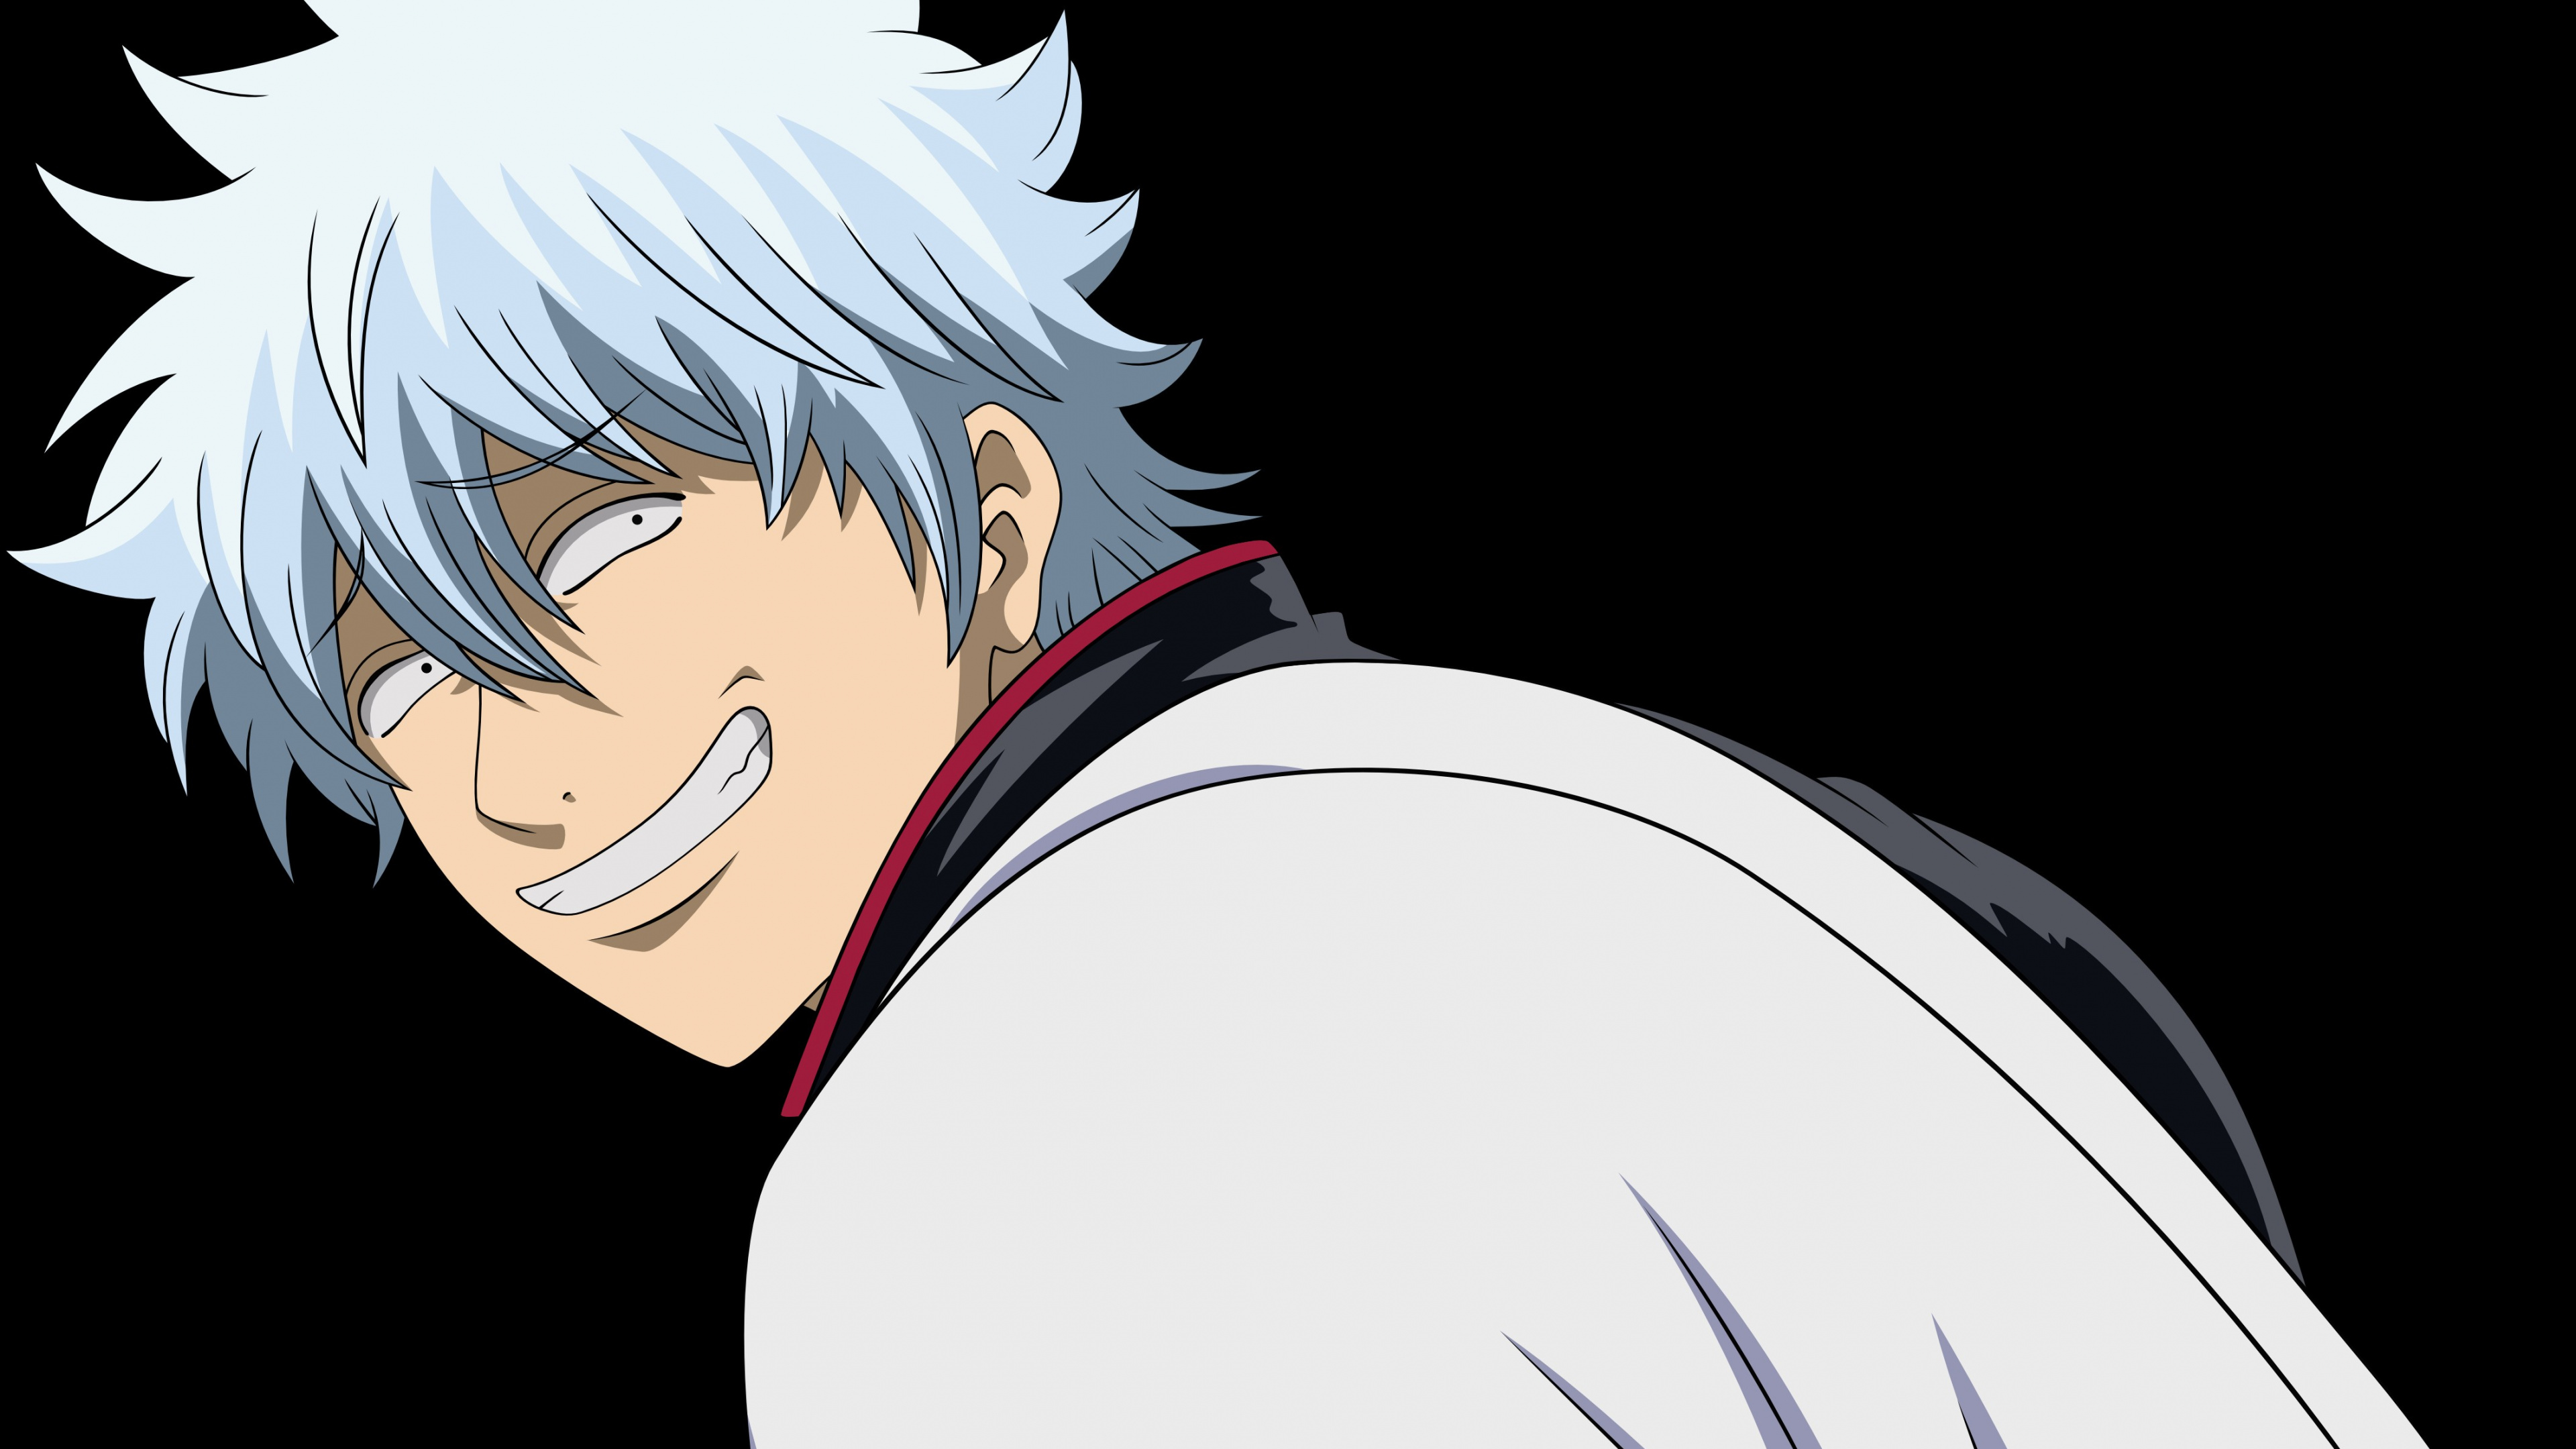 Personaje de Anime Masculino de Pelo Blanco. Wallpaper in 3840x2160 Resolution